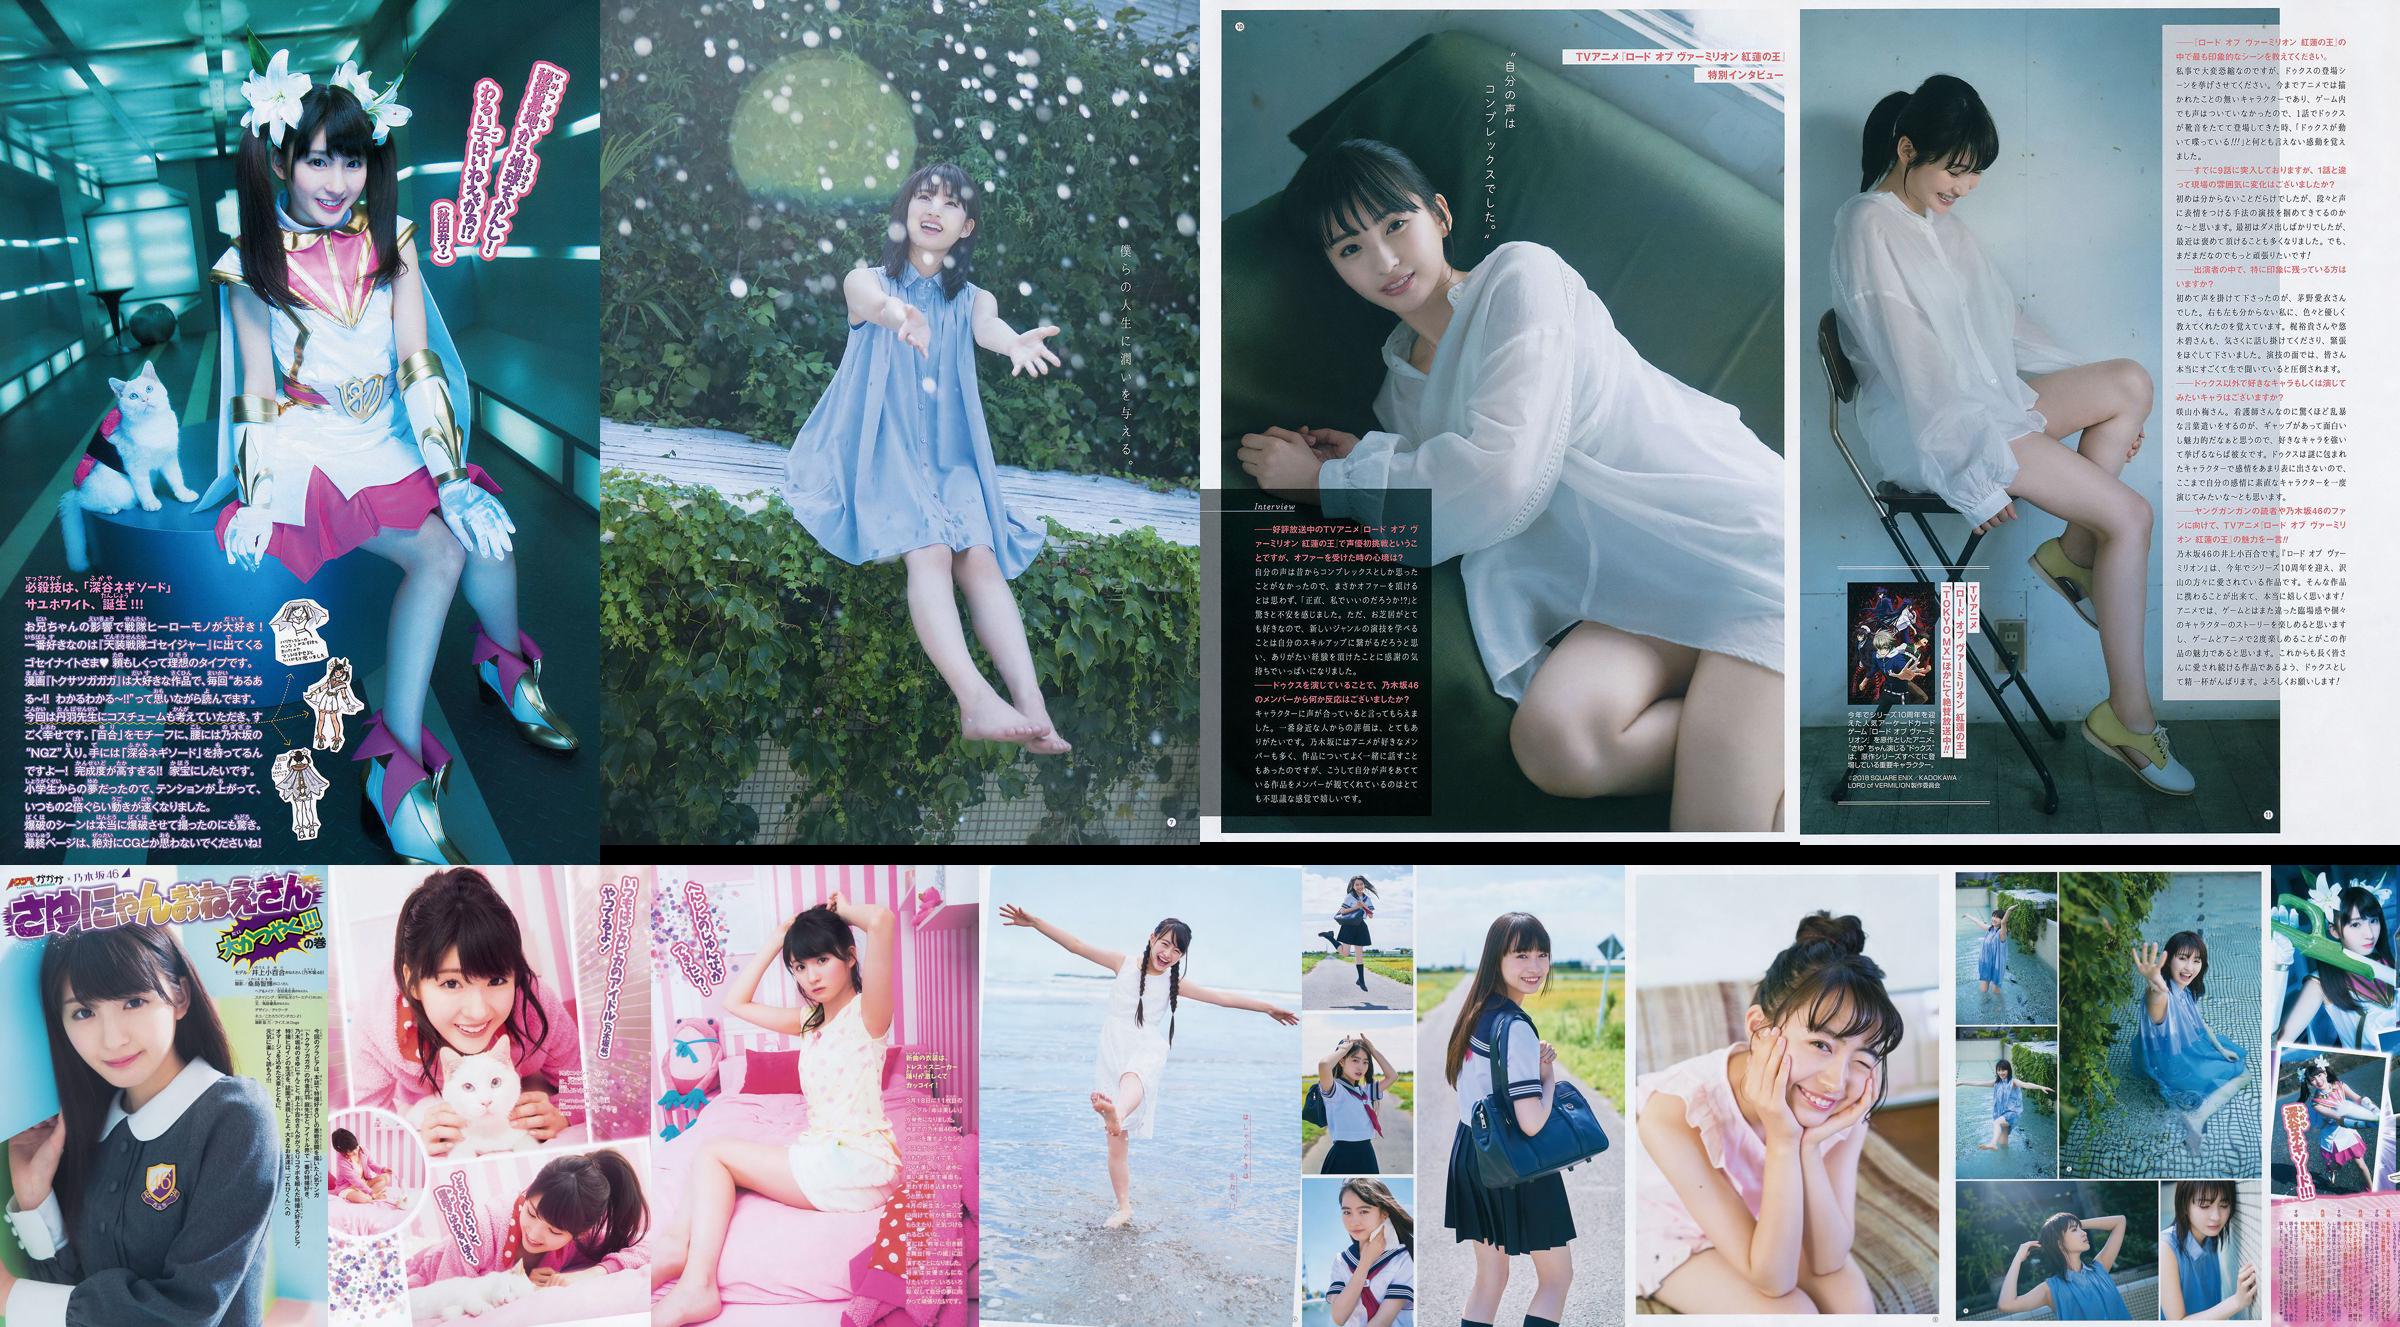 [Young Gangan] Sayuri Inoue Its original sand 2018 No.18 Photo Magazine No.b31730 Page 2